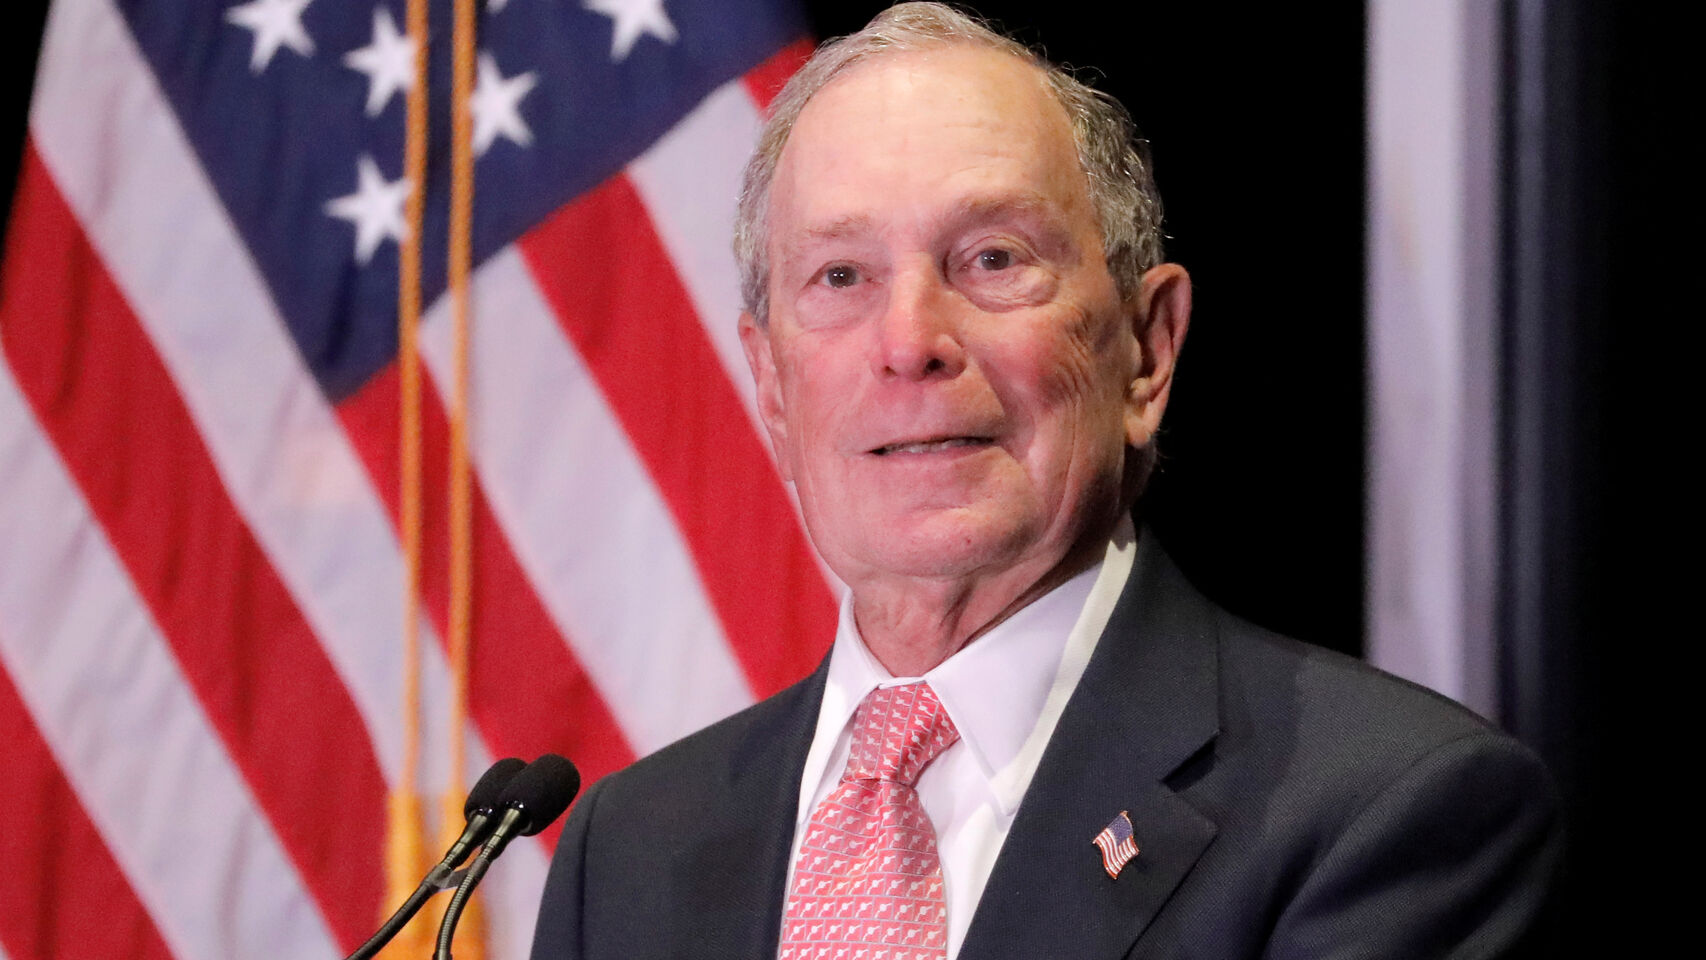 Michael Bloomberg, fundador de Bloomberg, durante un acto en Nueva York. Reuters